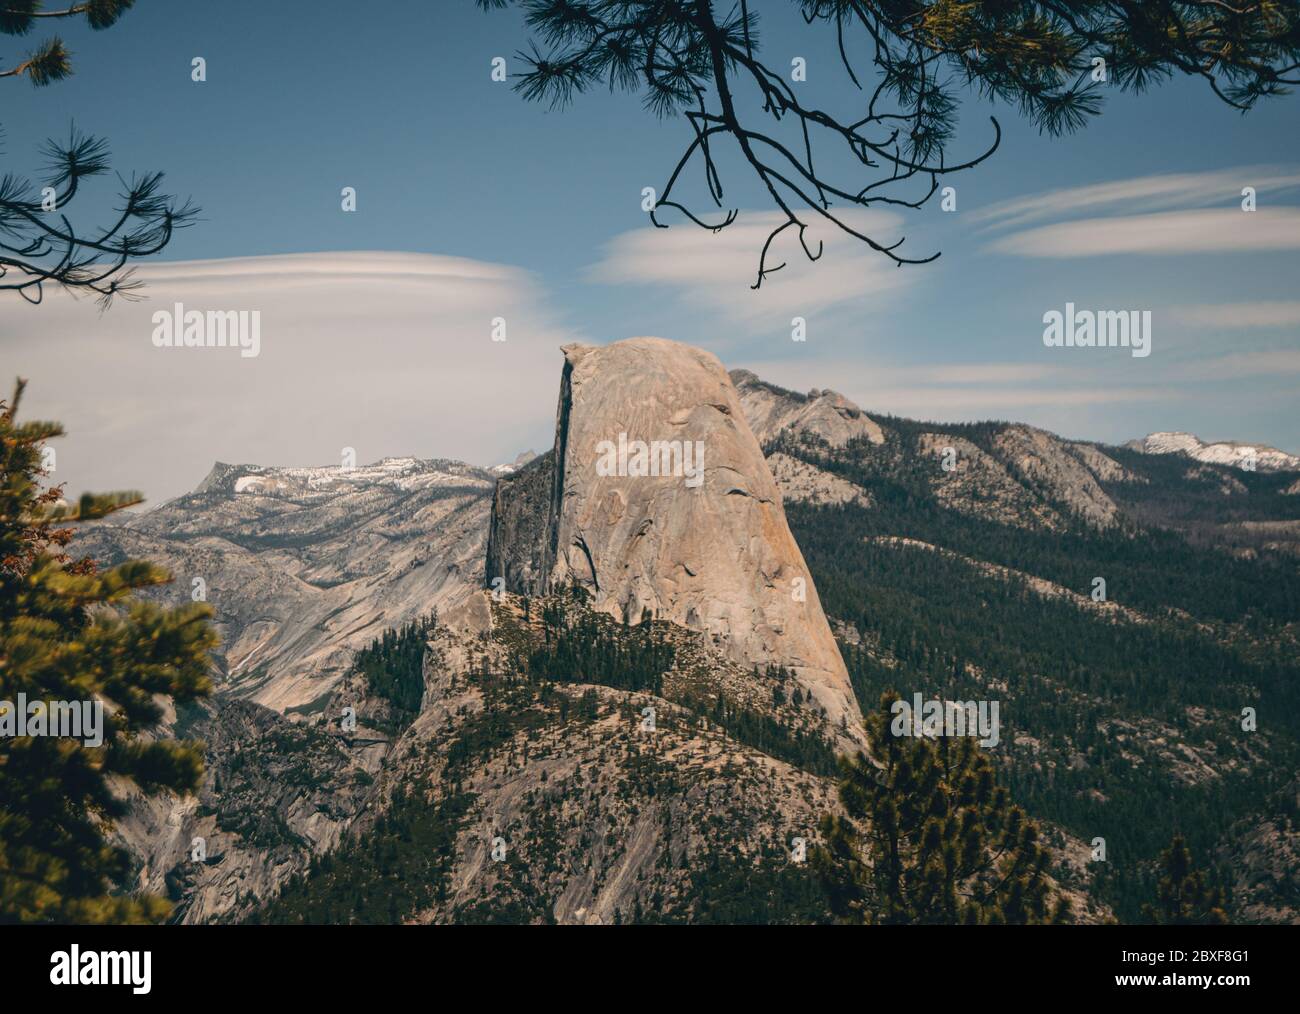 Half Dome in Yosemite National Park Stock Photo